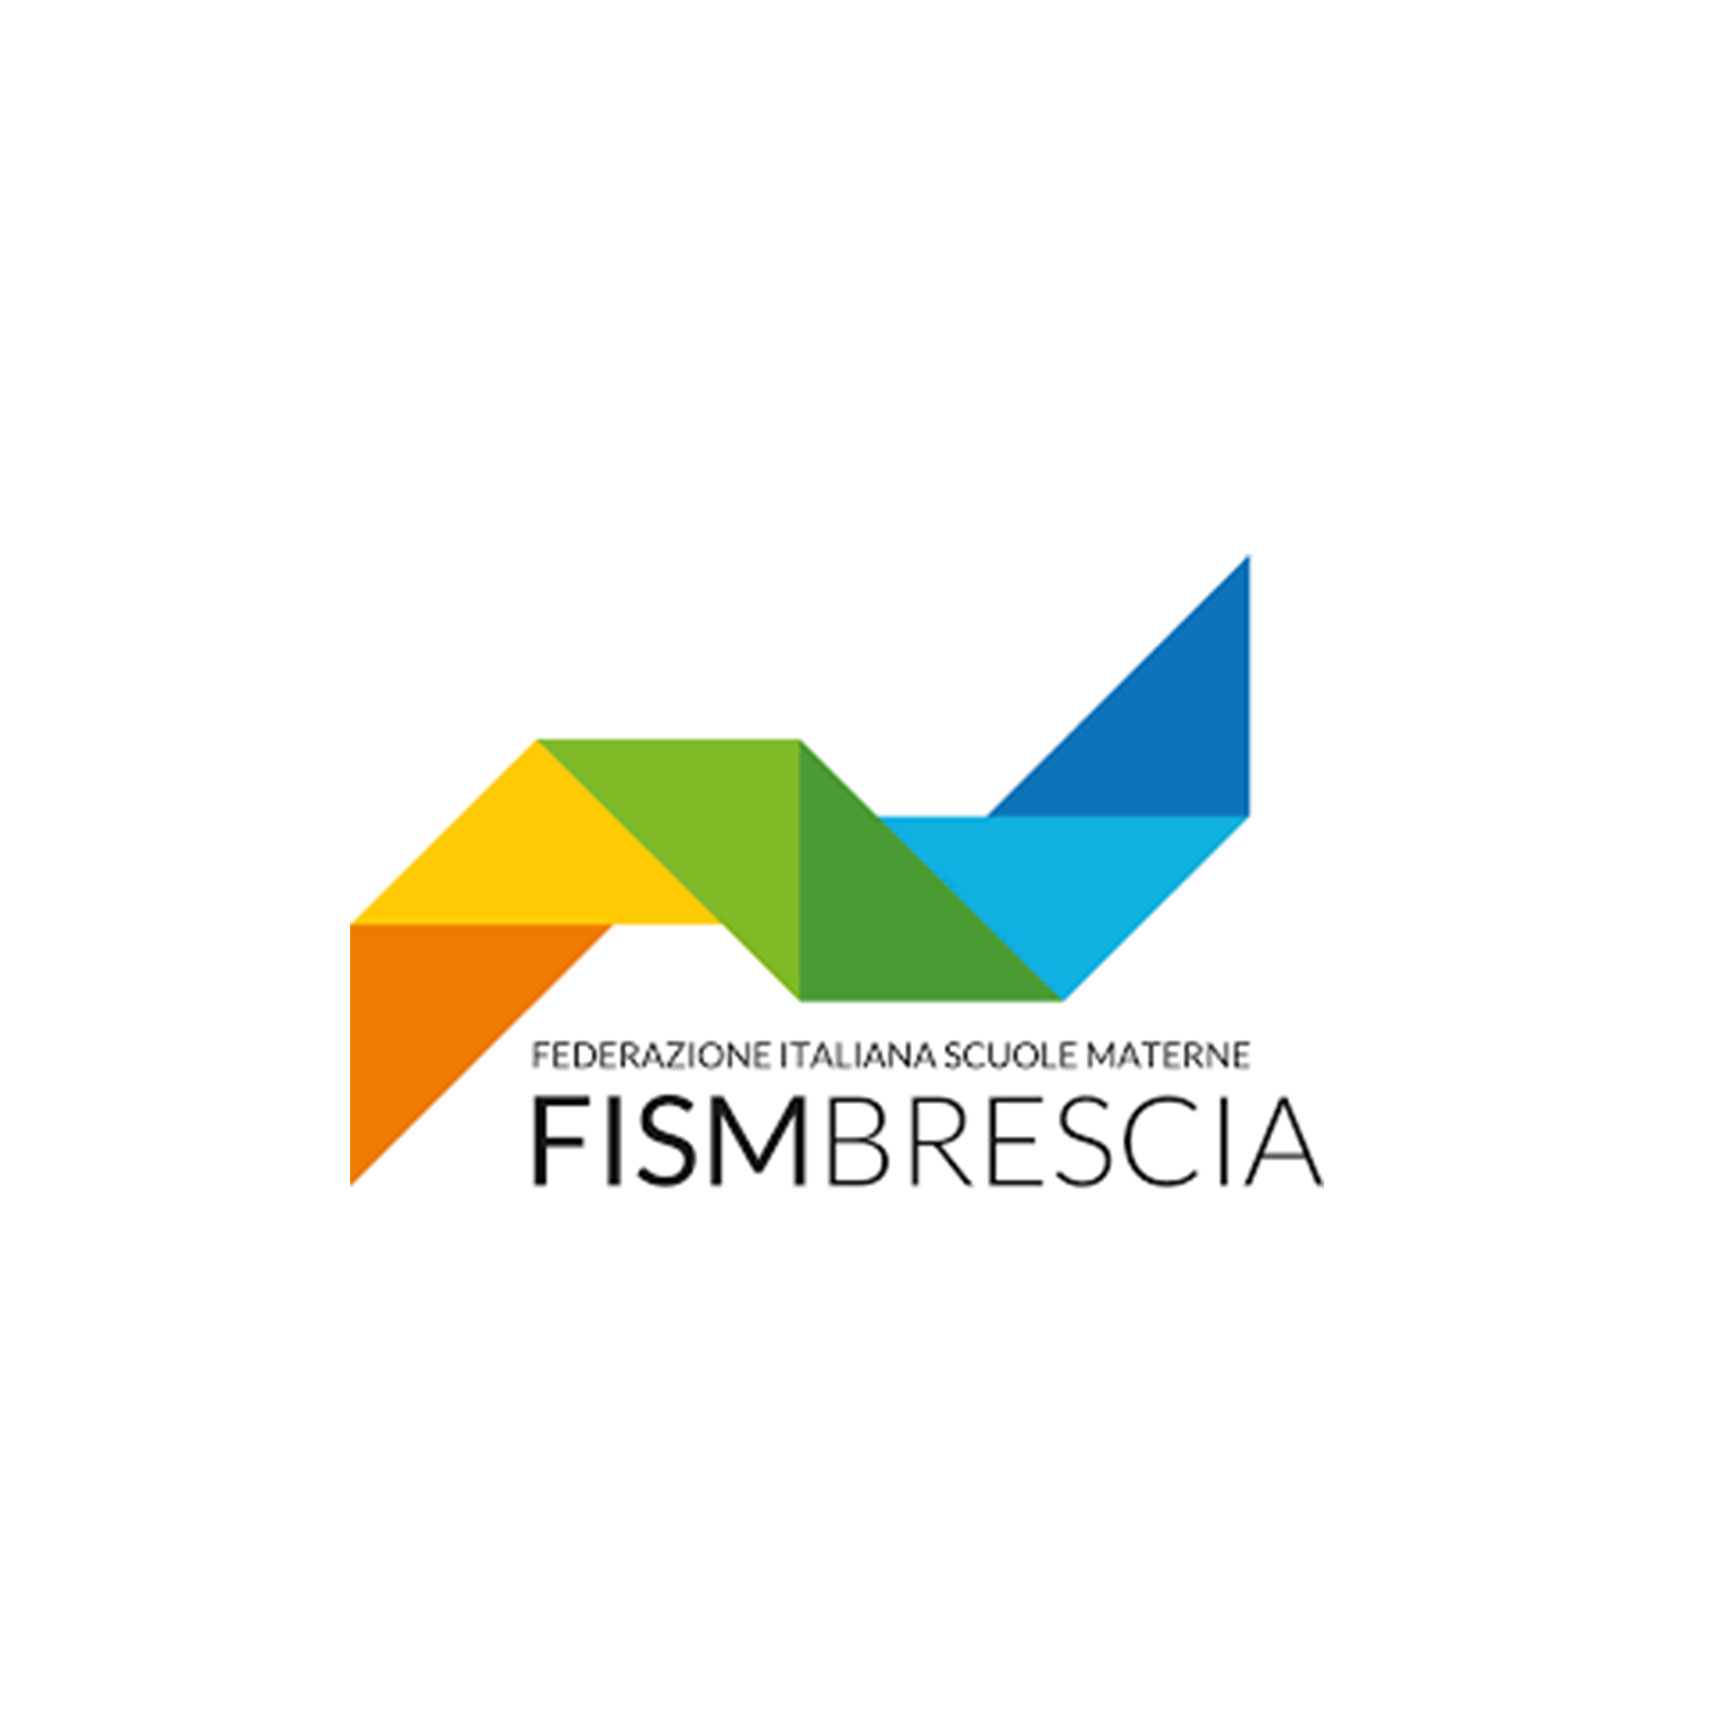 Logo di FISM Brescia, Federazione Italiana Scuole Materne